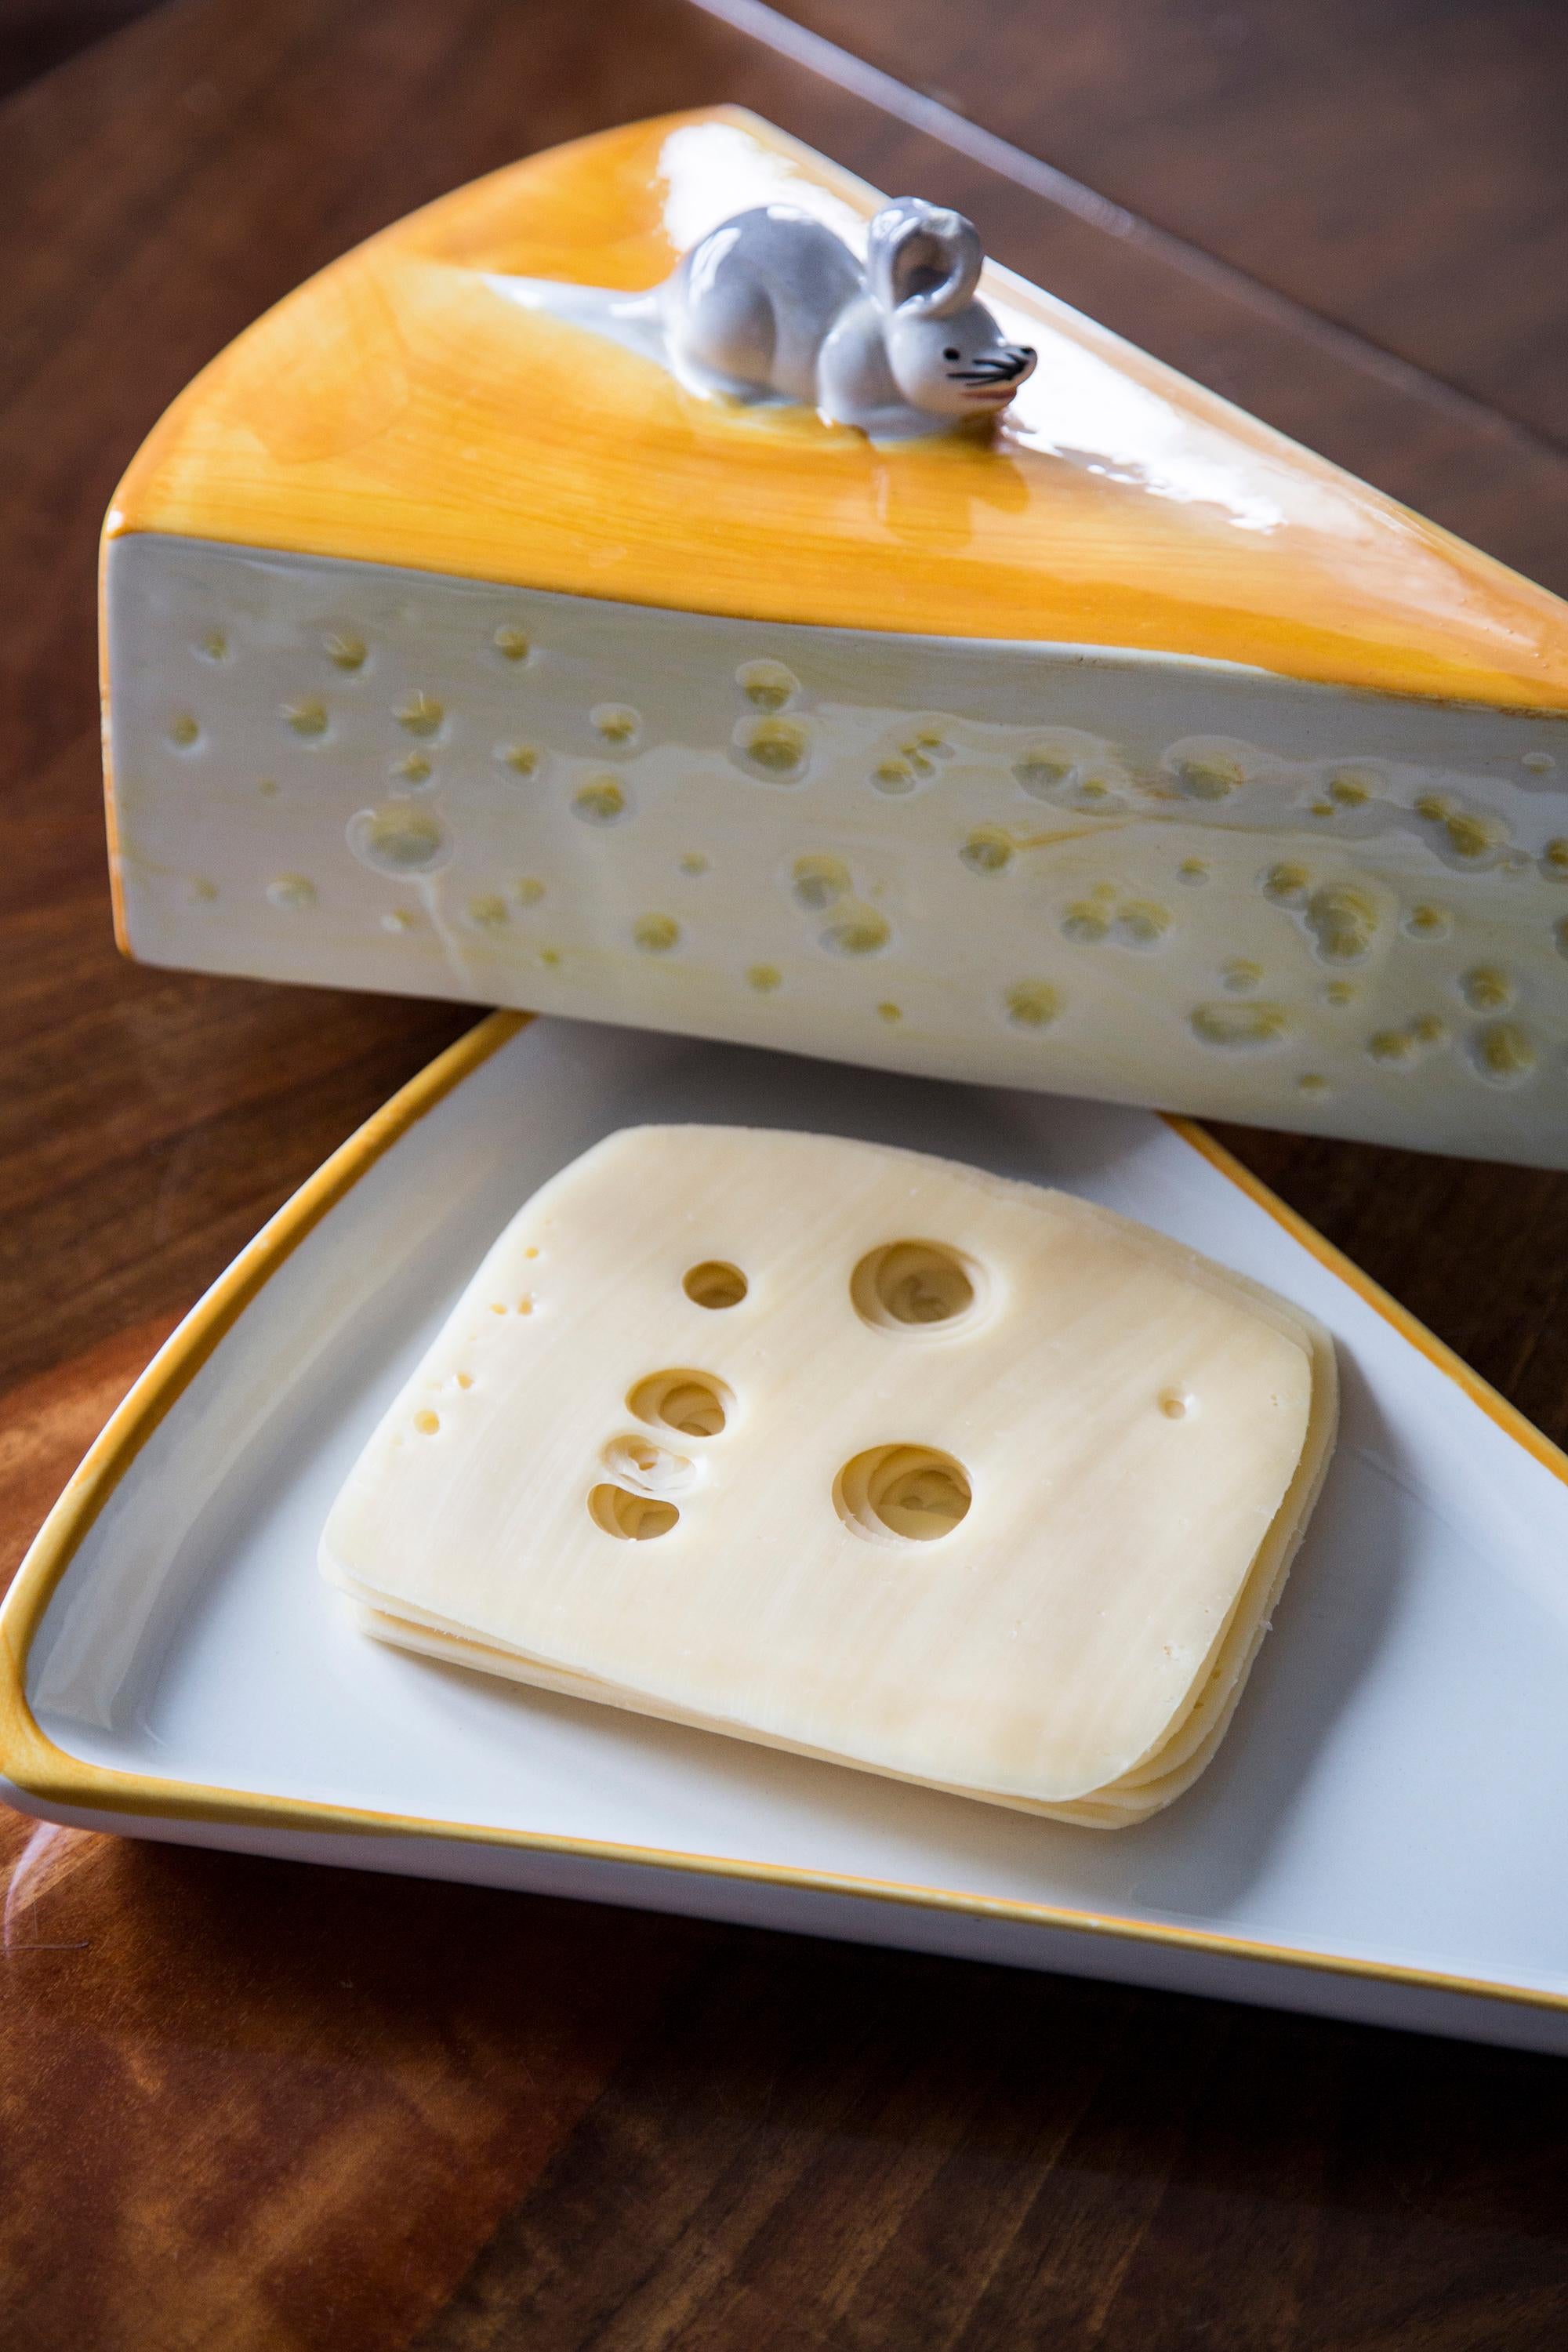 Einzigartige dekorative Käseplatte mit Maus aus Italien. Produziert in den 1970er Jahren.
Der Teller ist handbemalt. Teller ist in sehr gutem Vintage-Zustand, keine Schäden oder Risse. Die Mäuseohren sind ein wenig zerstört - wie auf den Bildern zu